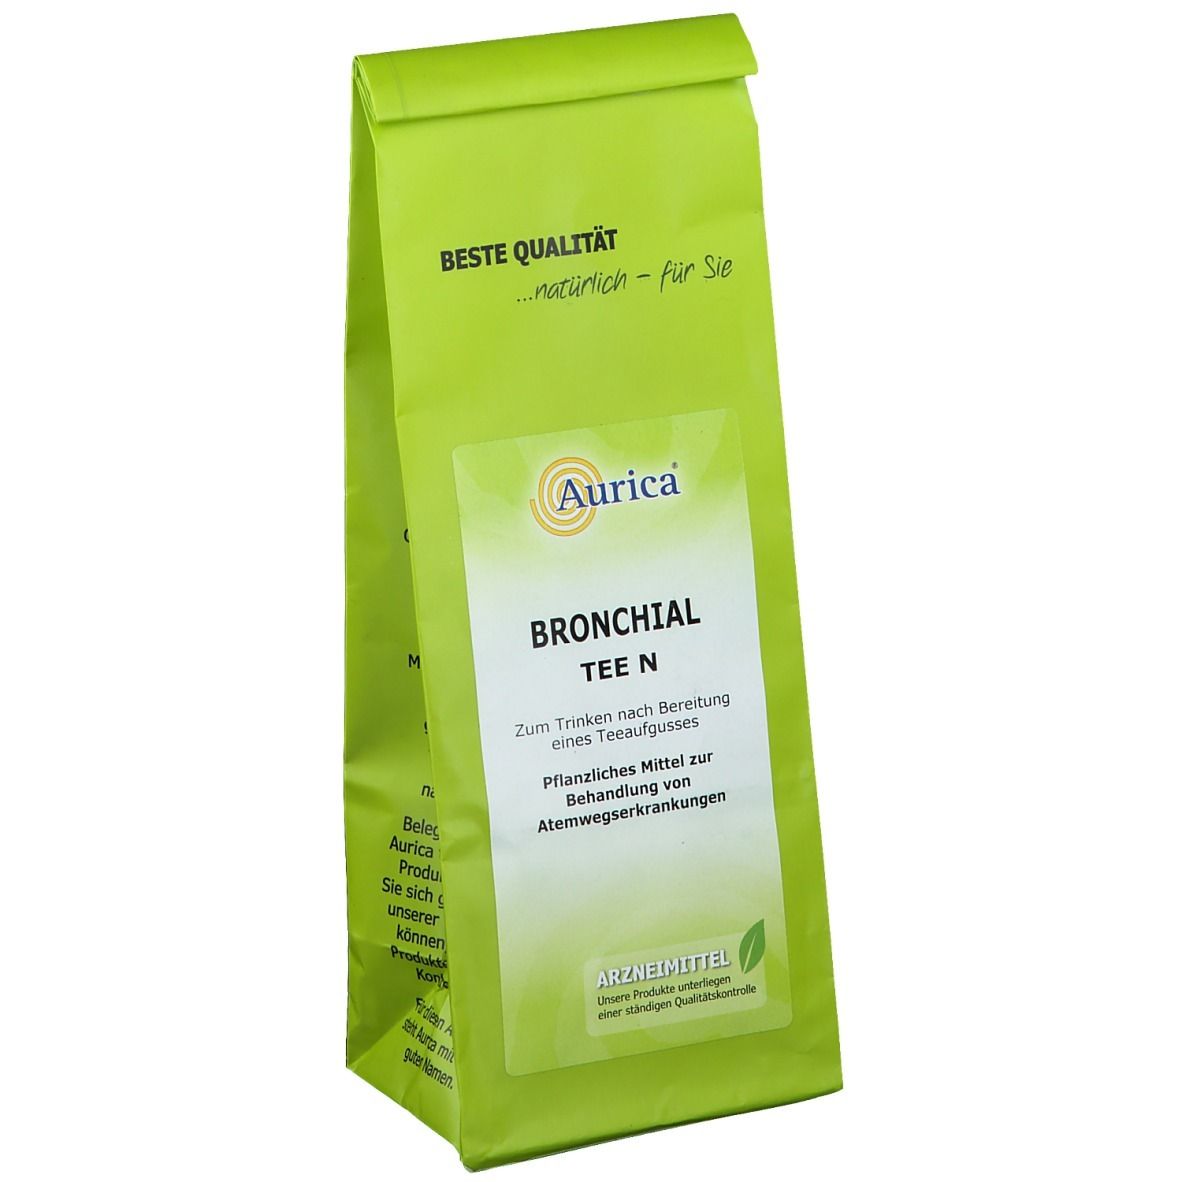 Aurica® Bronchial Tee N